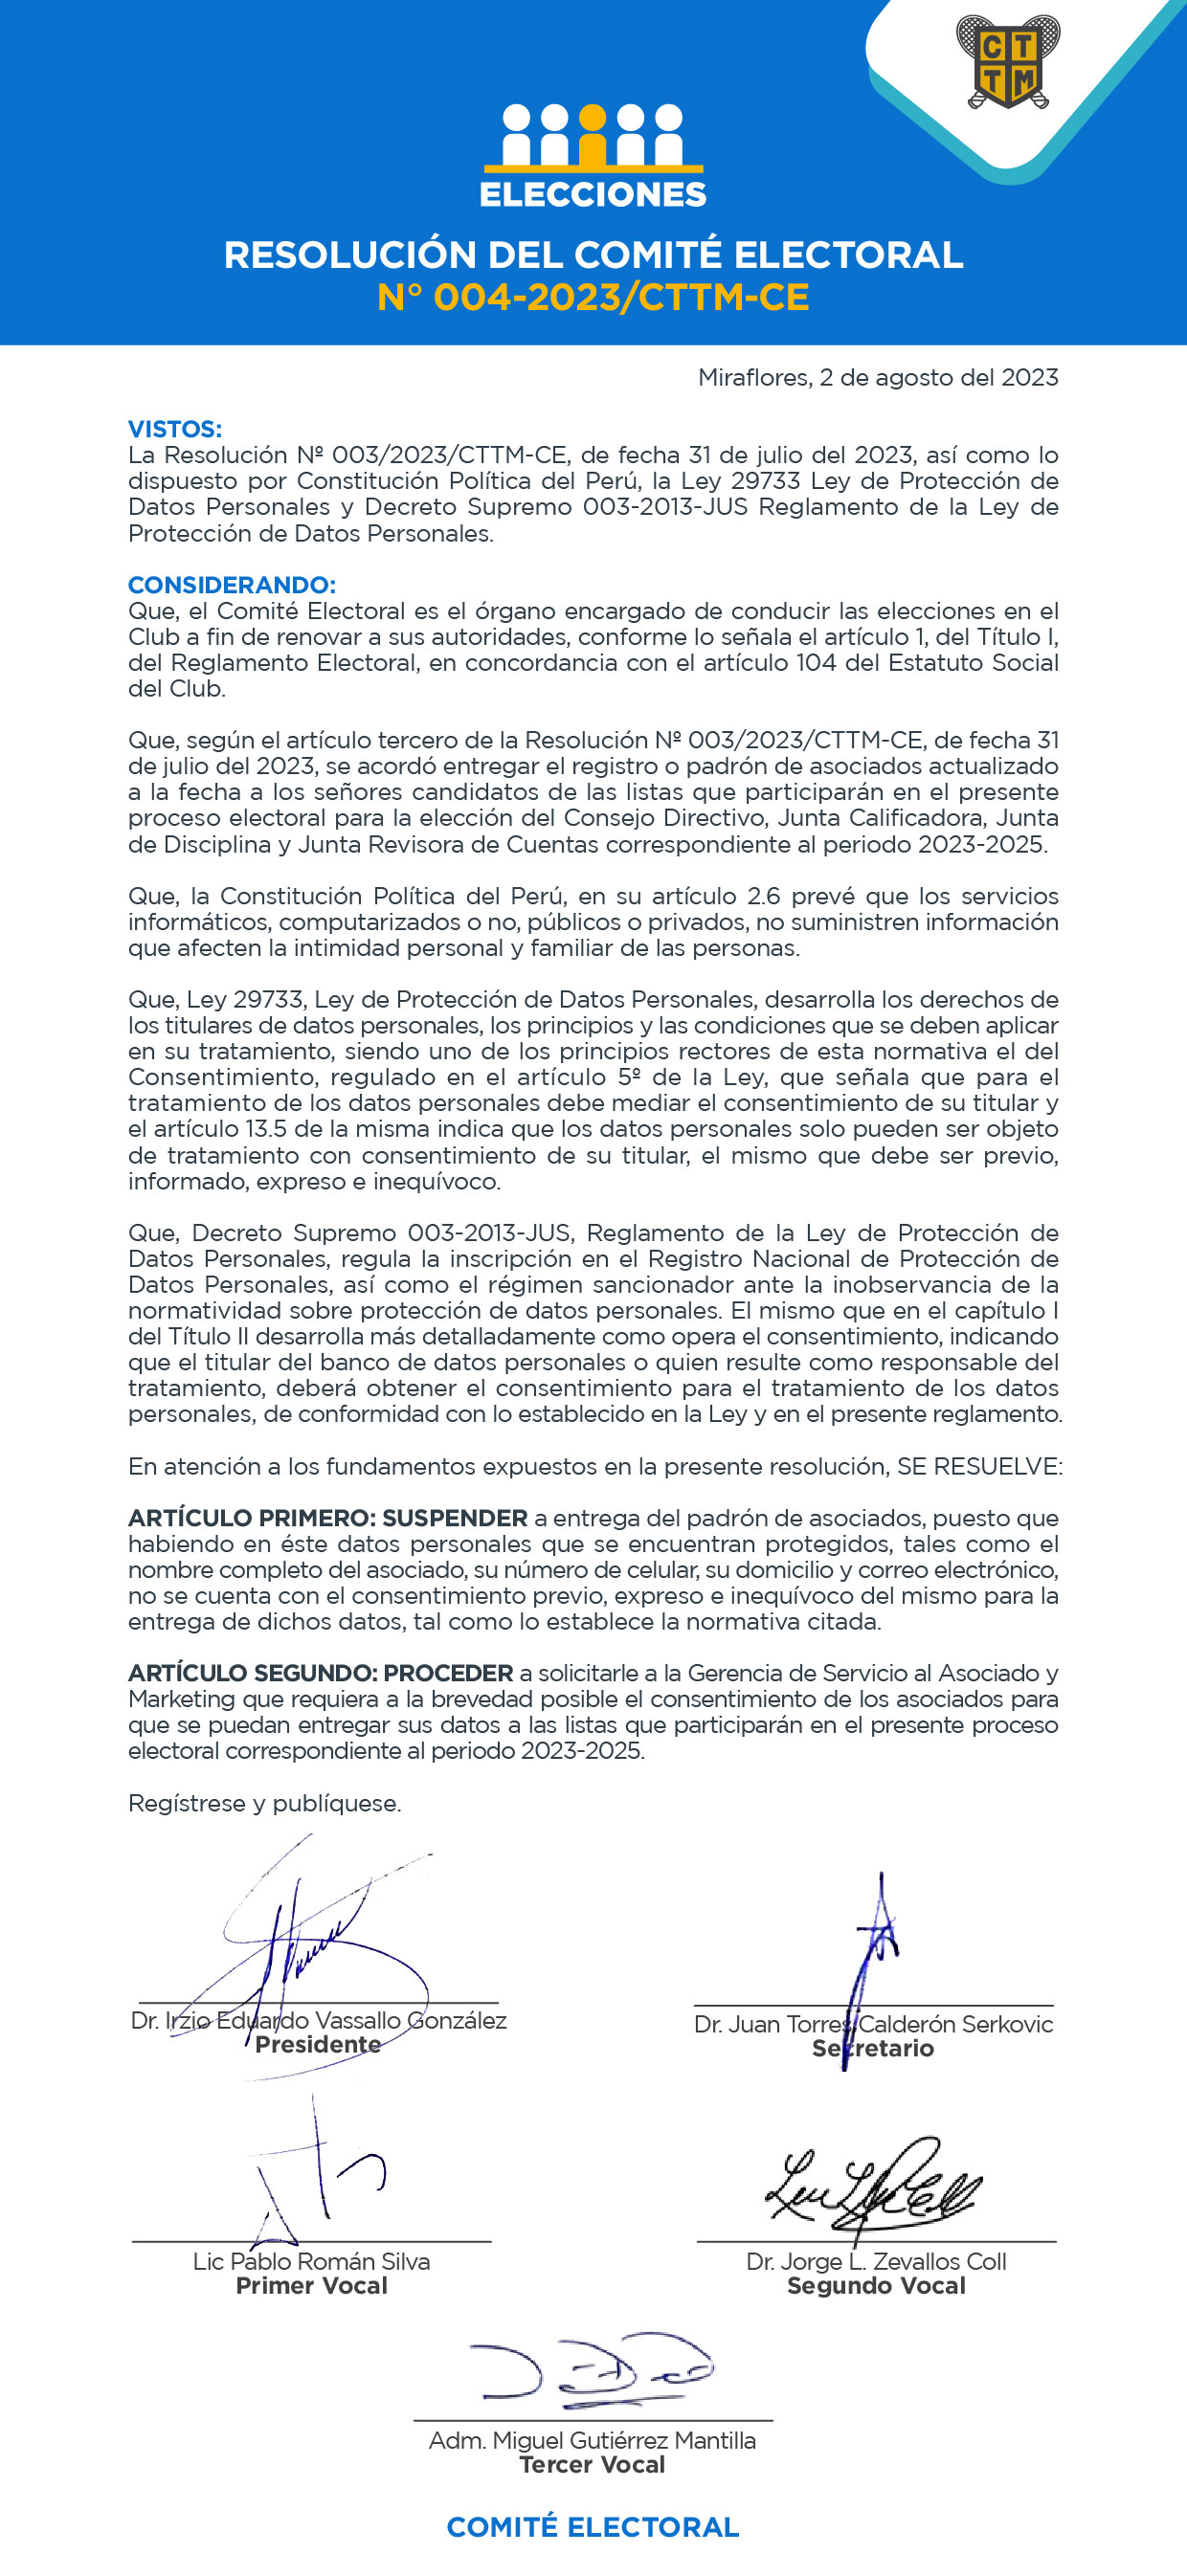 RESOLUCIÓN DEL COMITÉ ELECTORAL N 004-2023 CTTM-CE